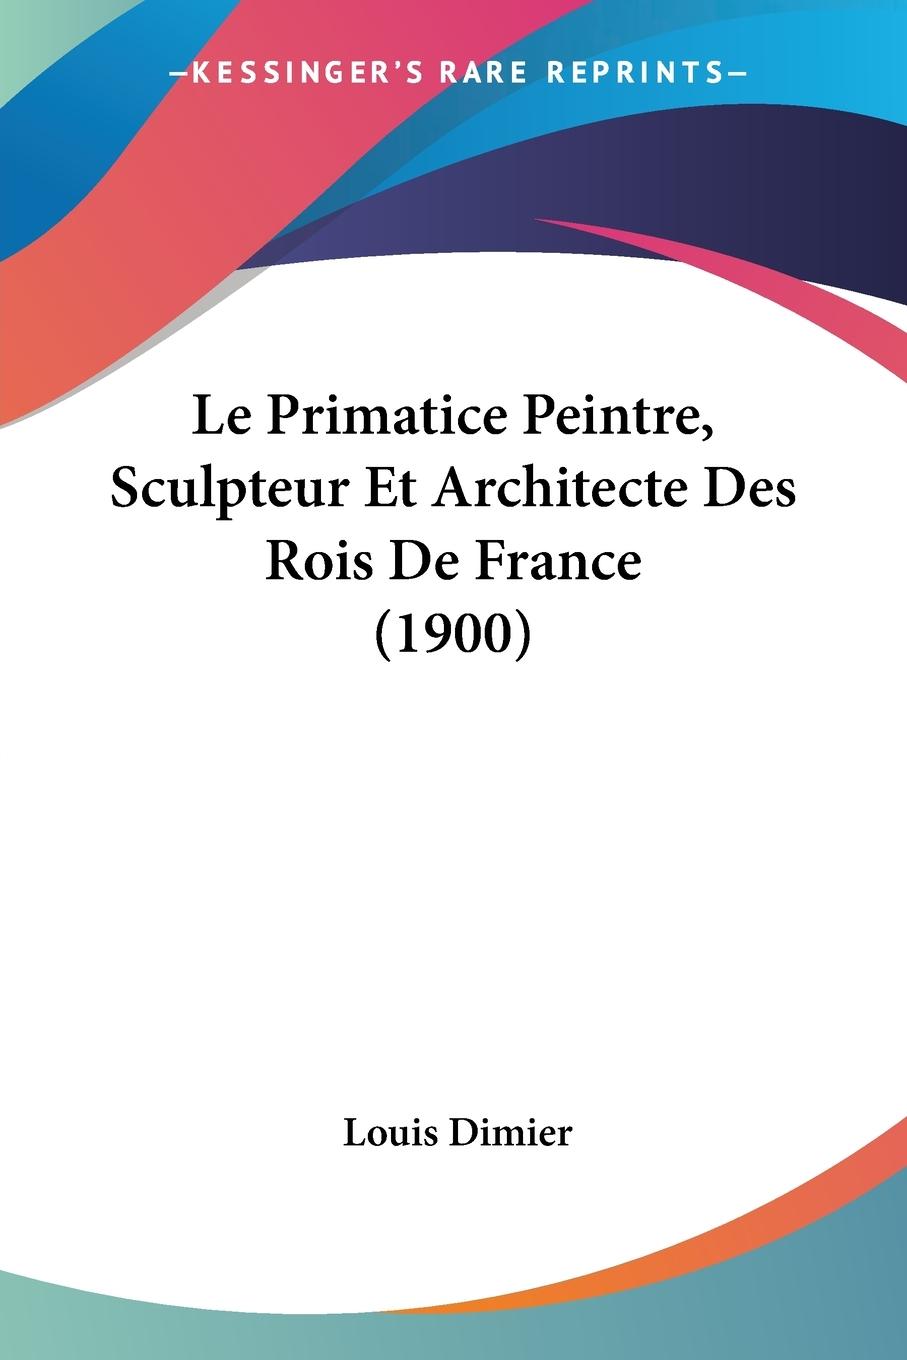 Le Primatice Peintre, Sculpteur Et Architecte Des Rois De France (1900) - Dimier, Louis